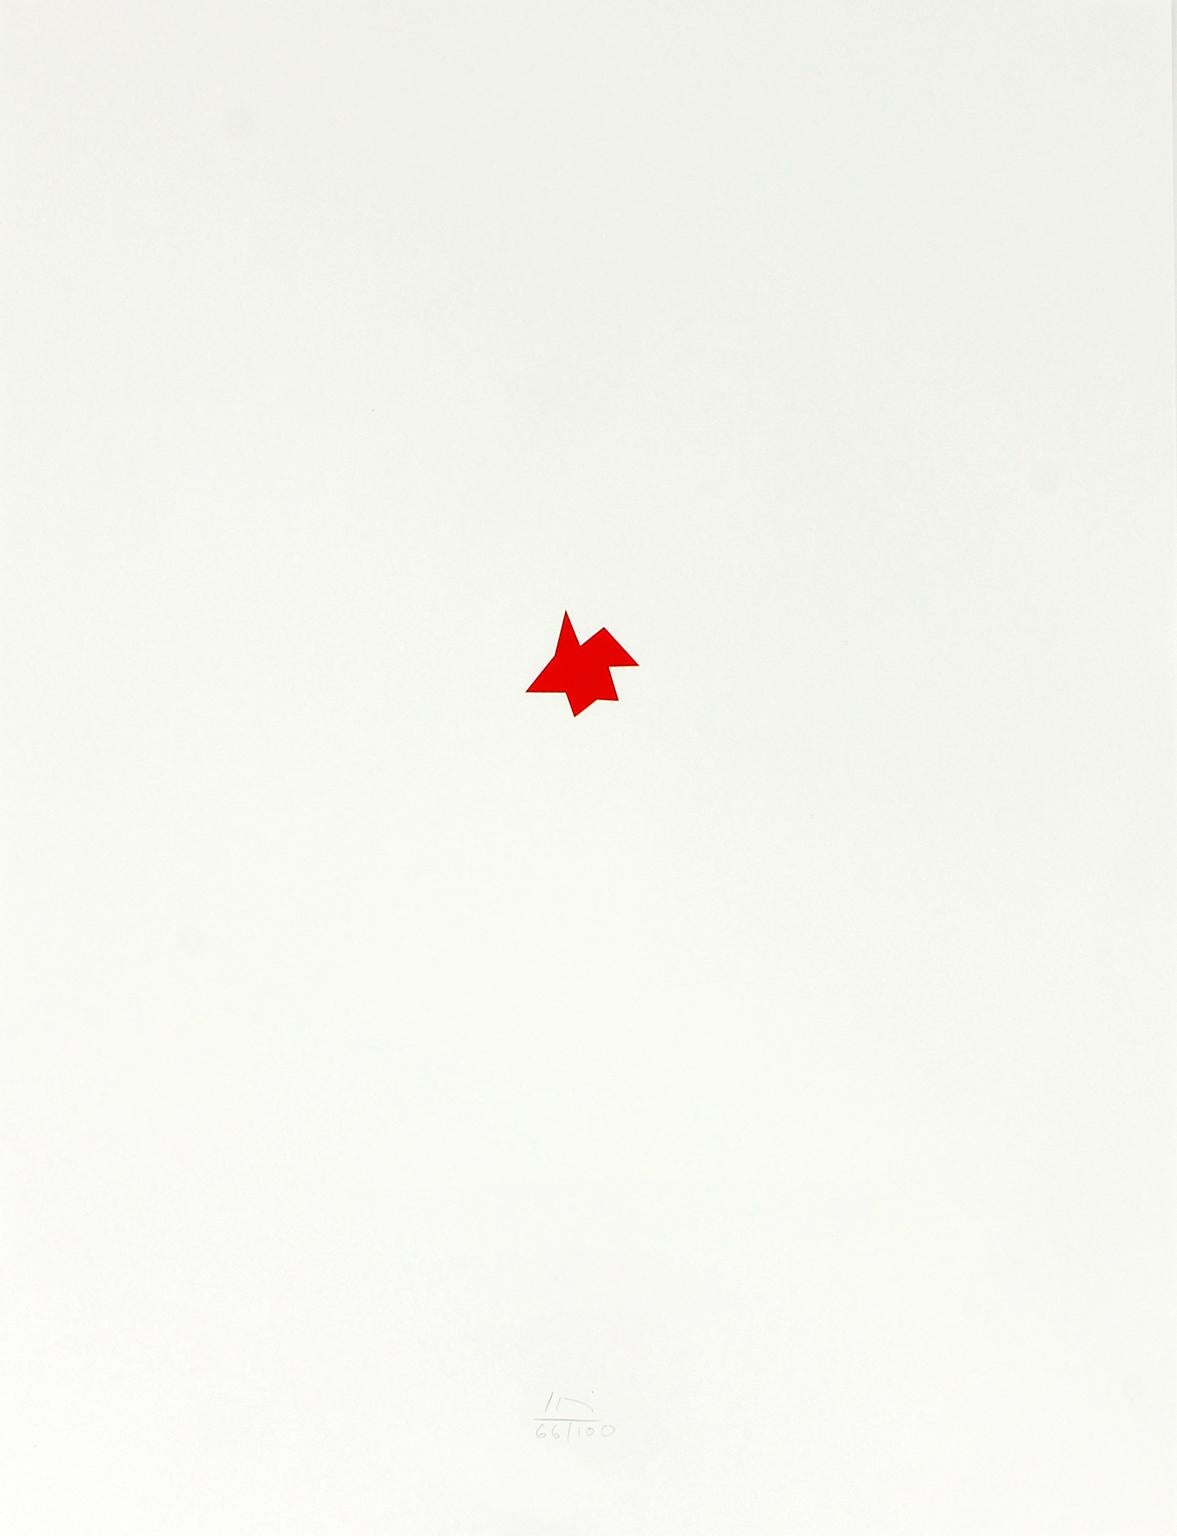 lithographie "sans titre" sur carton de l'étoile rouge "Star for Children" de l'artiste Imi Knoebel tirée du portfolio "Kinderstern", publié en 1989 par l'Edition Domberger afin de récolter des fonds pour loger les familles d'enfants hospitalisés